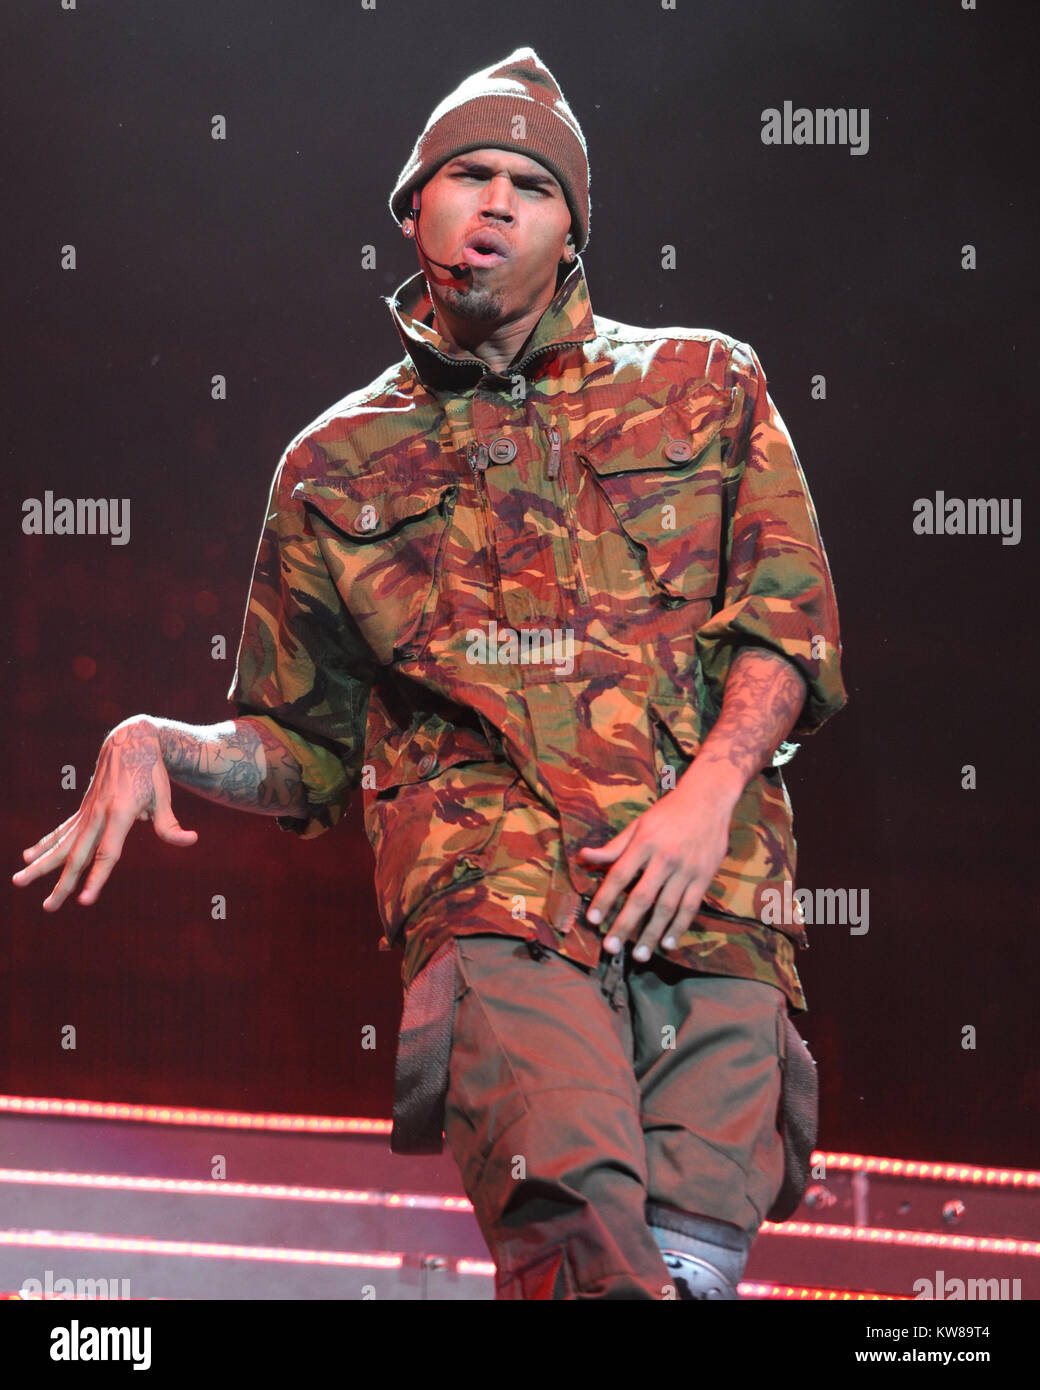 SMG Chris Brown AAA 100511 34.JPG MIAMI, FL - OKTOBER 05: Sänger Chris Brown spielt seine F.A.M.E. Tour in der AmericanAirlines Arena am 5. Oktober 2010 in Miami, Florida. (Foto Von Storms Media Group) Personen: Chris Brown Stockfoto